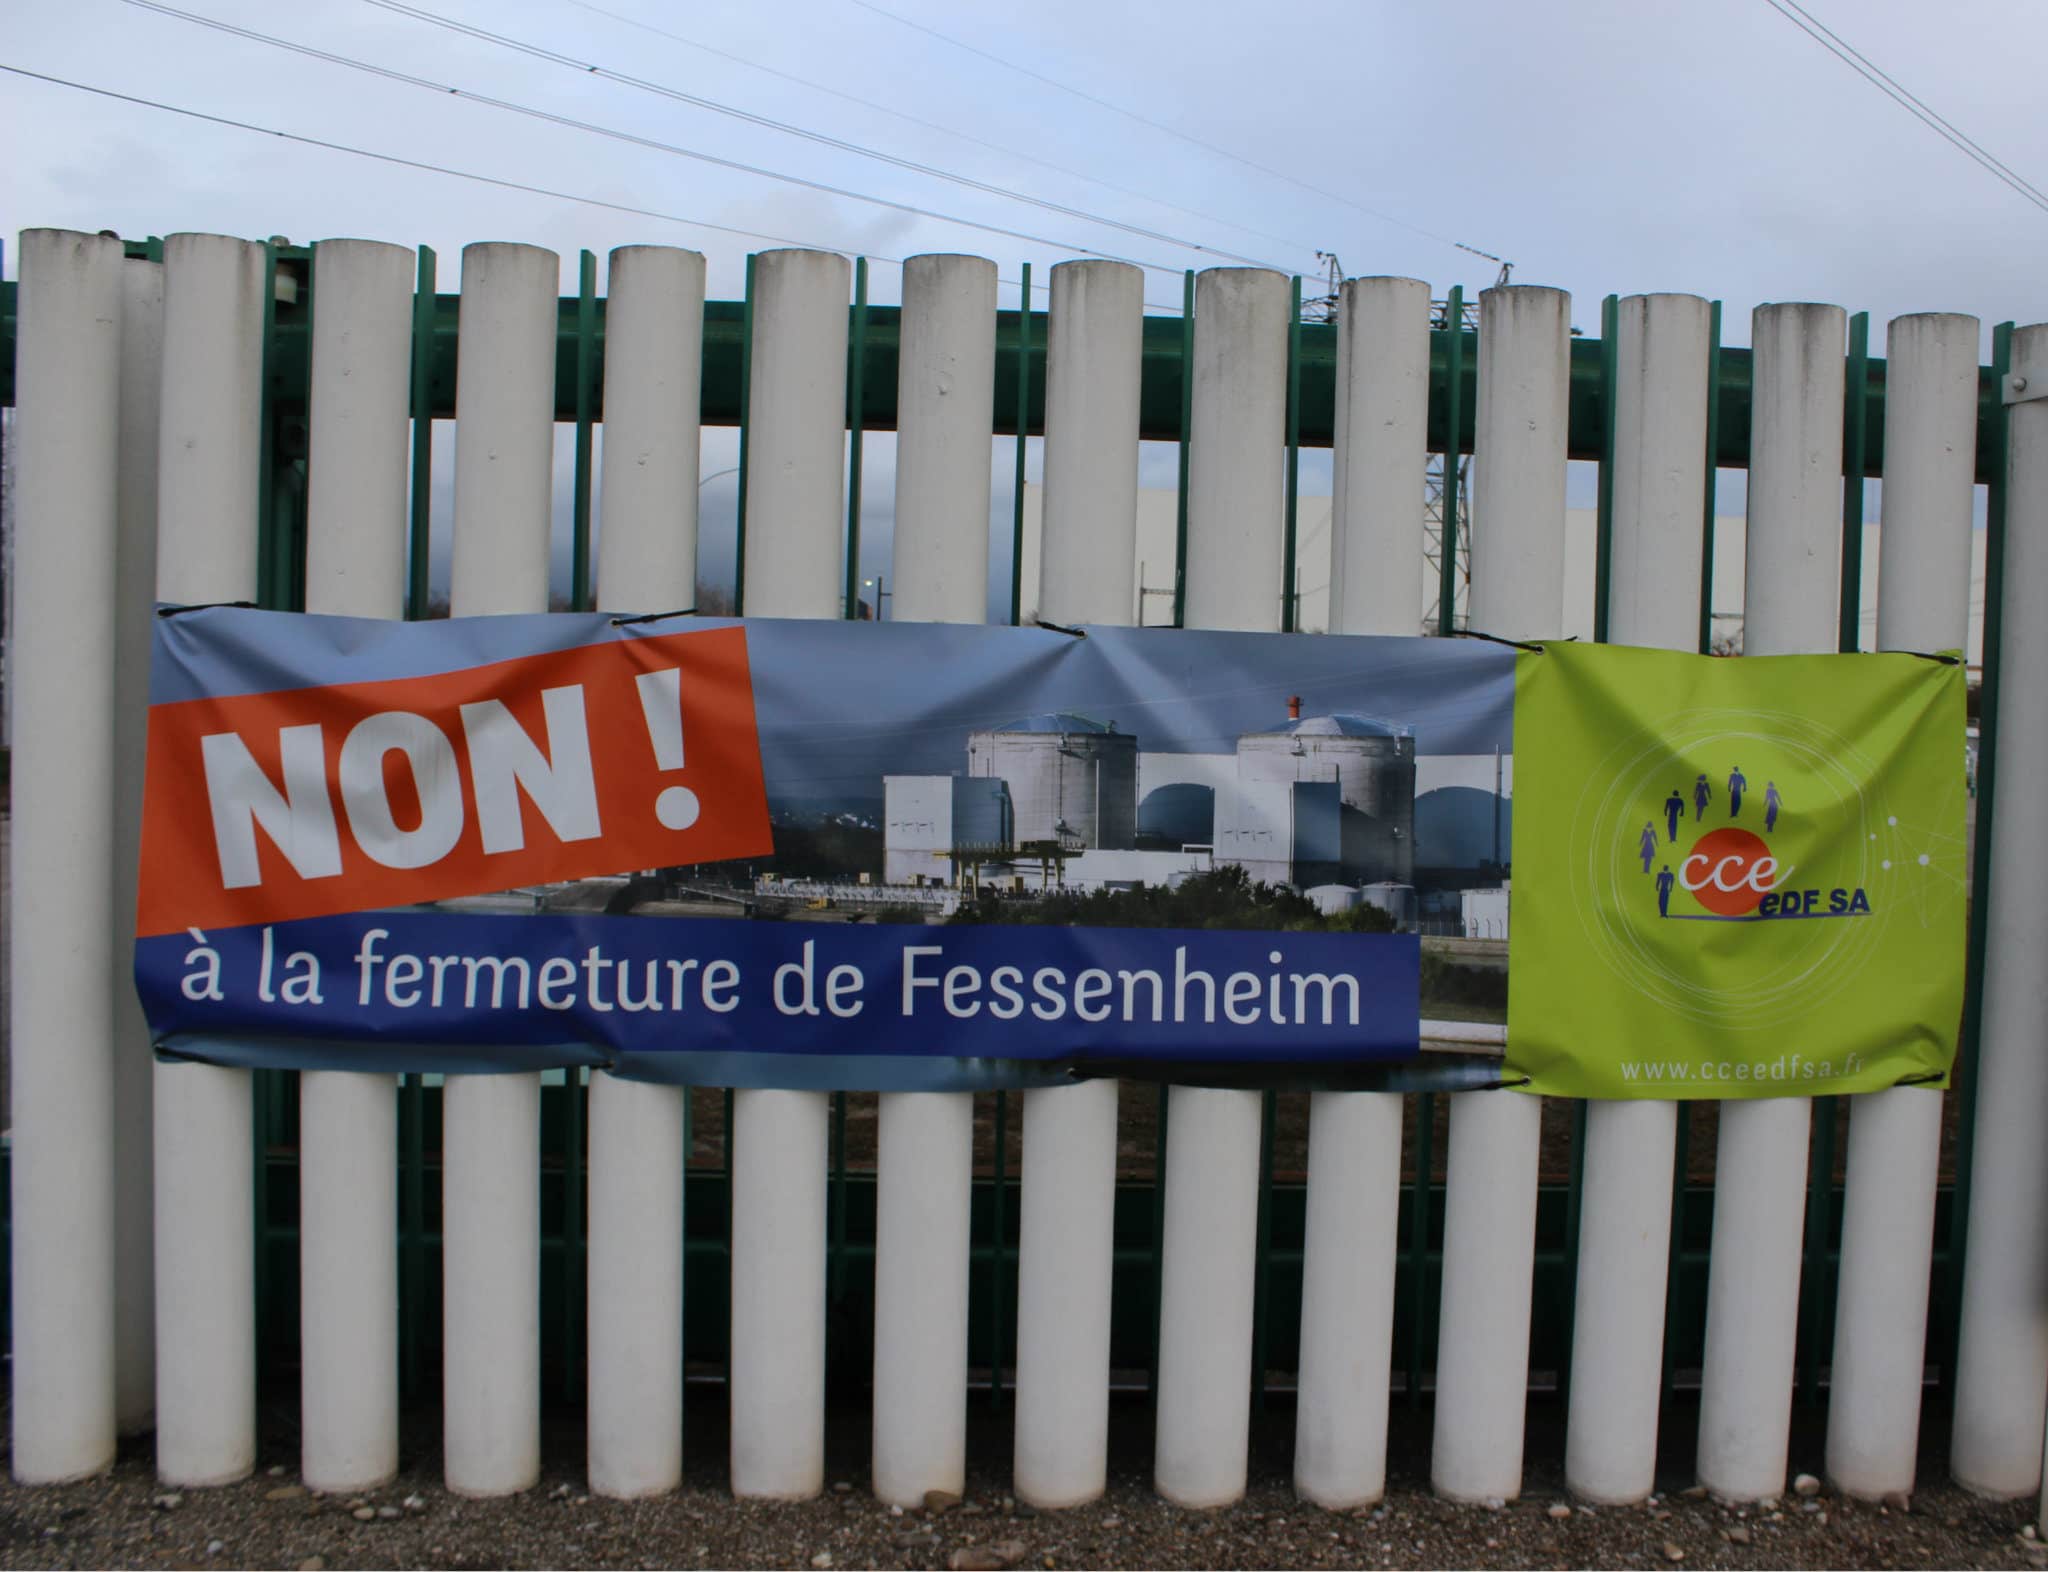 Dans la cenrtrale, direction, salariés et syndicats sont toujours mobilisés contre la fermeture, ou du moins pour la retarder, comme l'atteste cette affiche lors de la venue du Sébastien Lecornu en janvier 2018 (photo JFG / Rue89 Strasbourg)